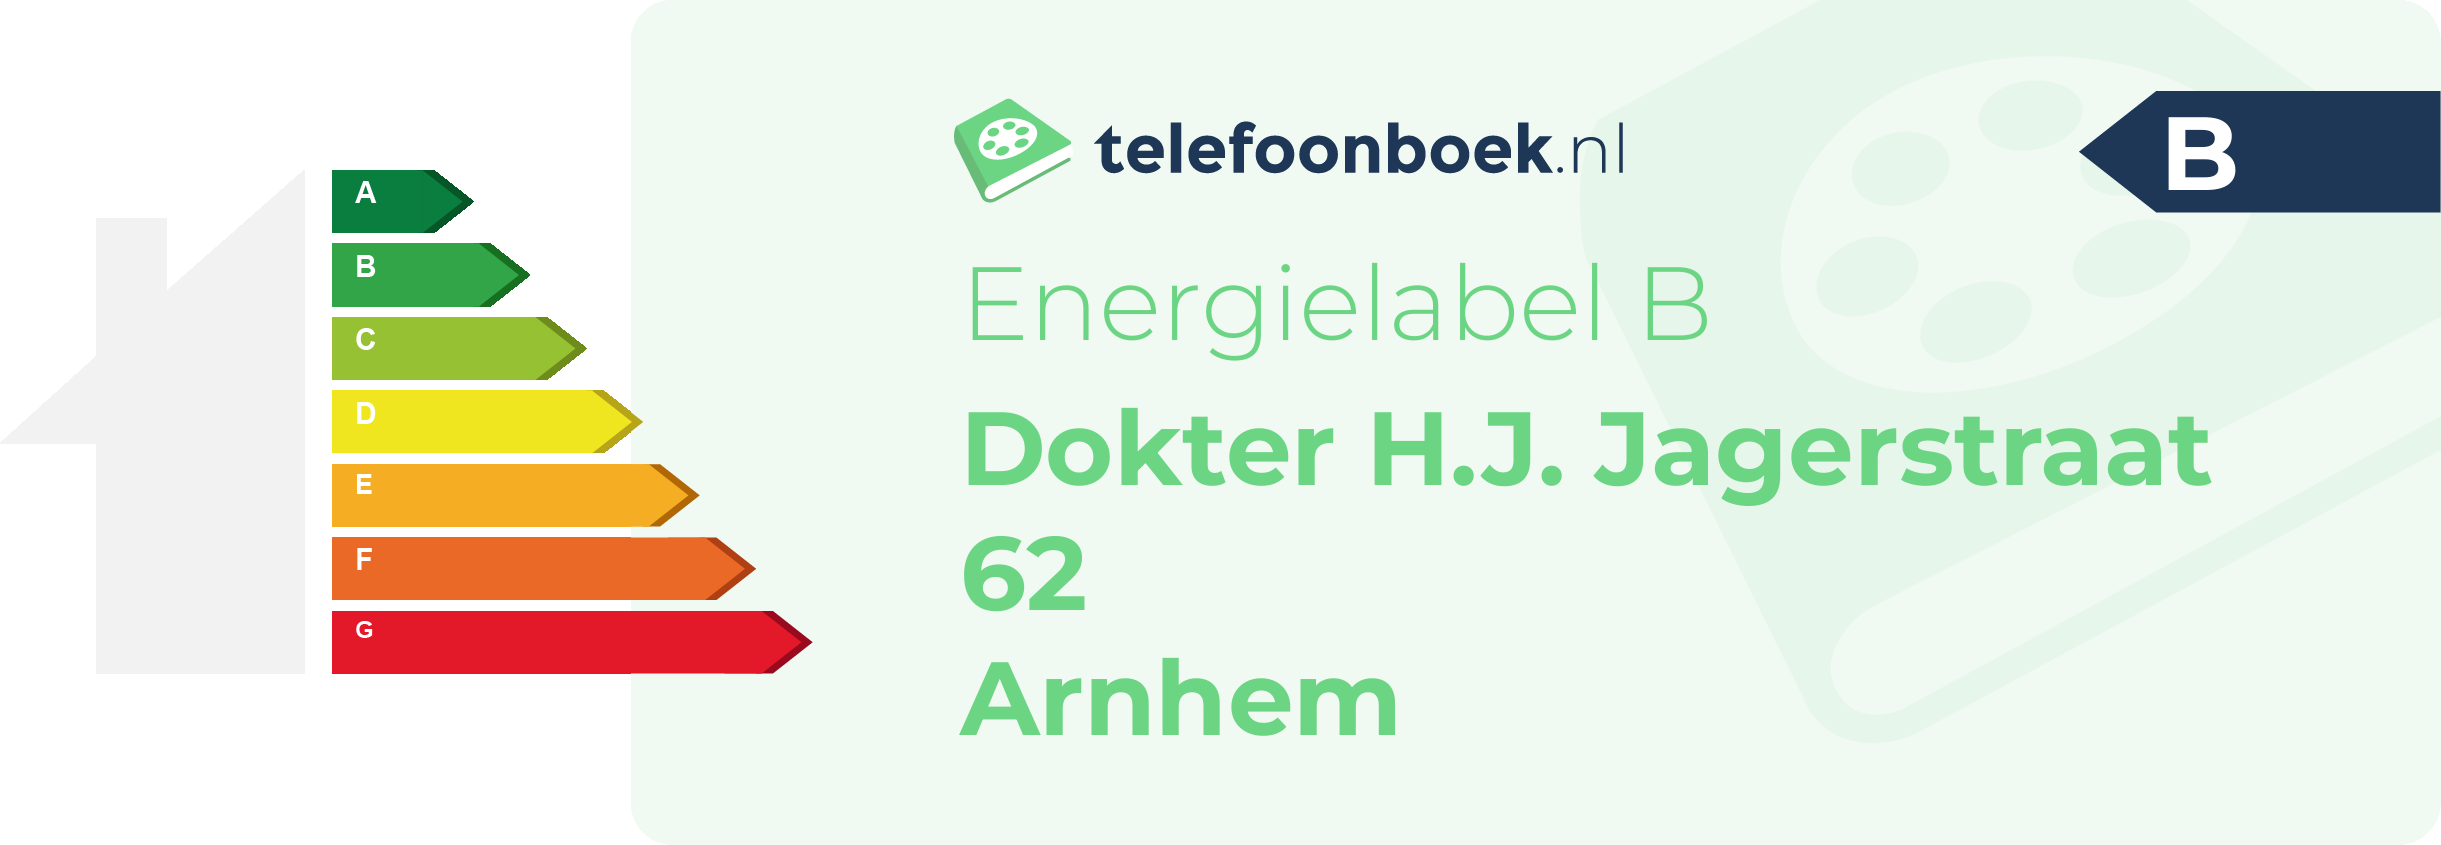 Energielabel Dokter H.J. Jagerstraat 62 Arnhem